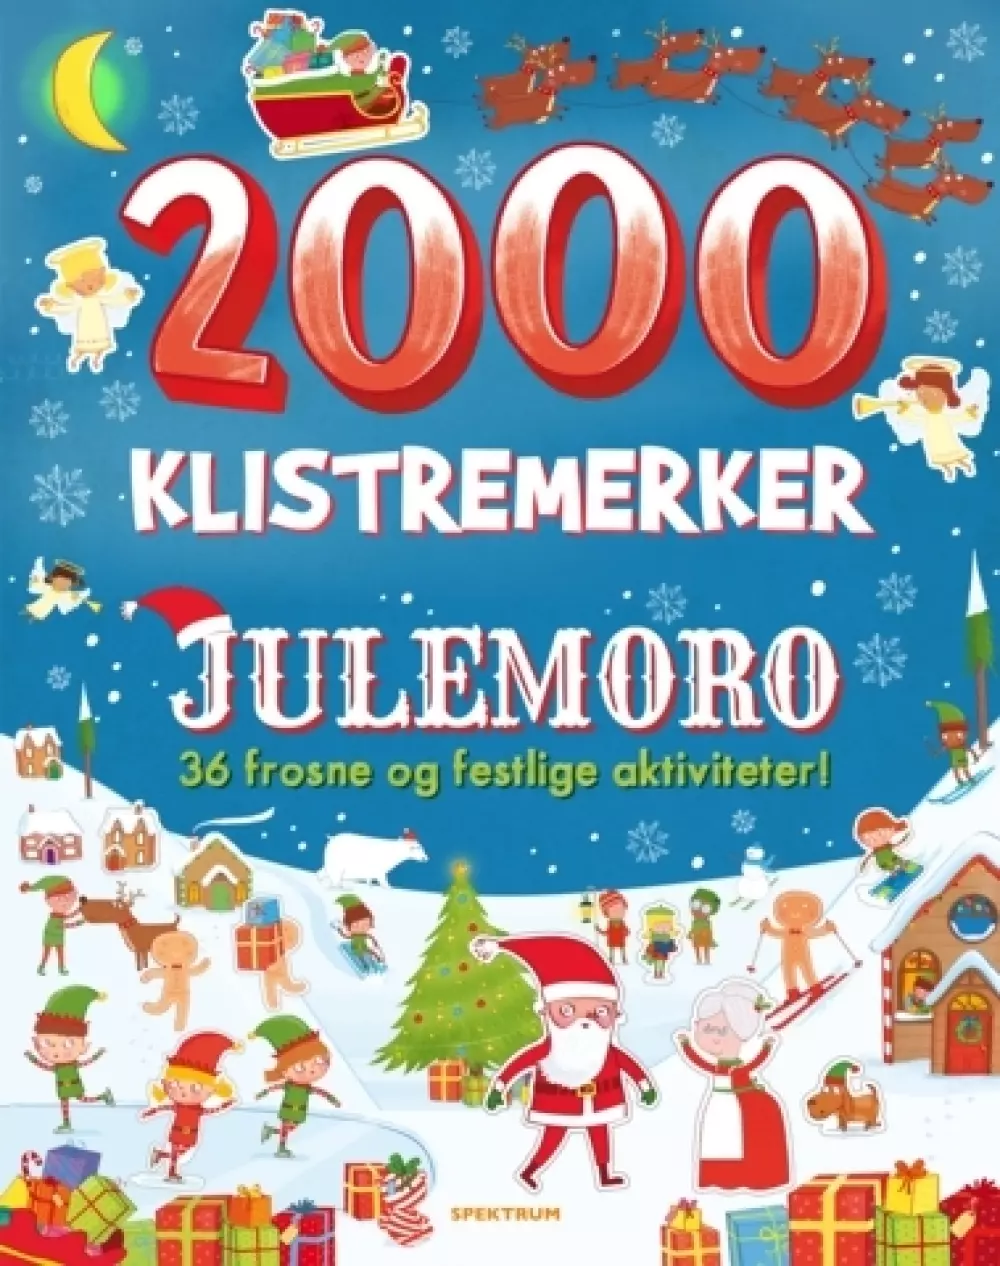 2000 klistremerker: Julemoro